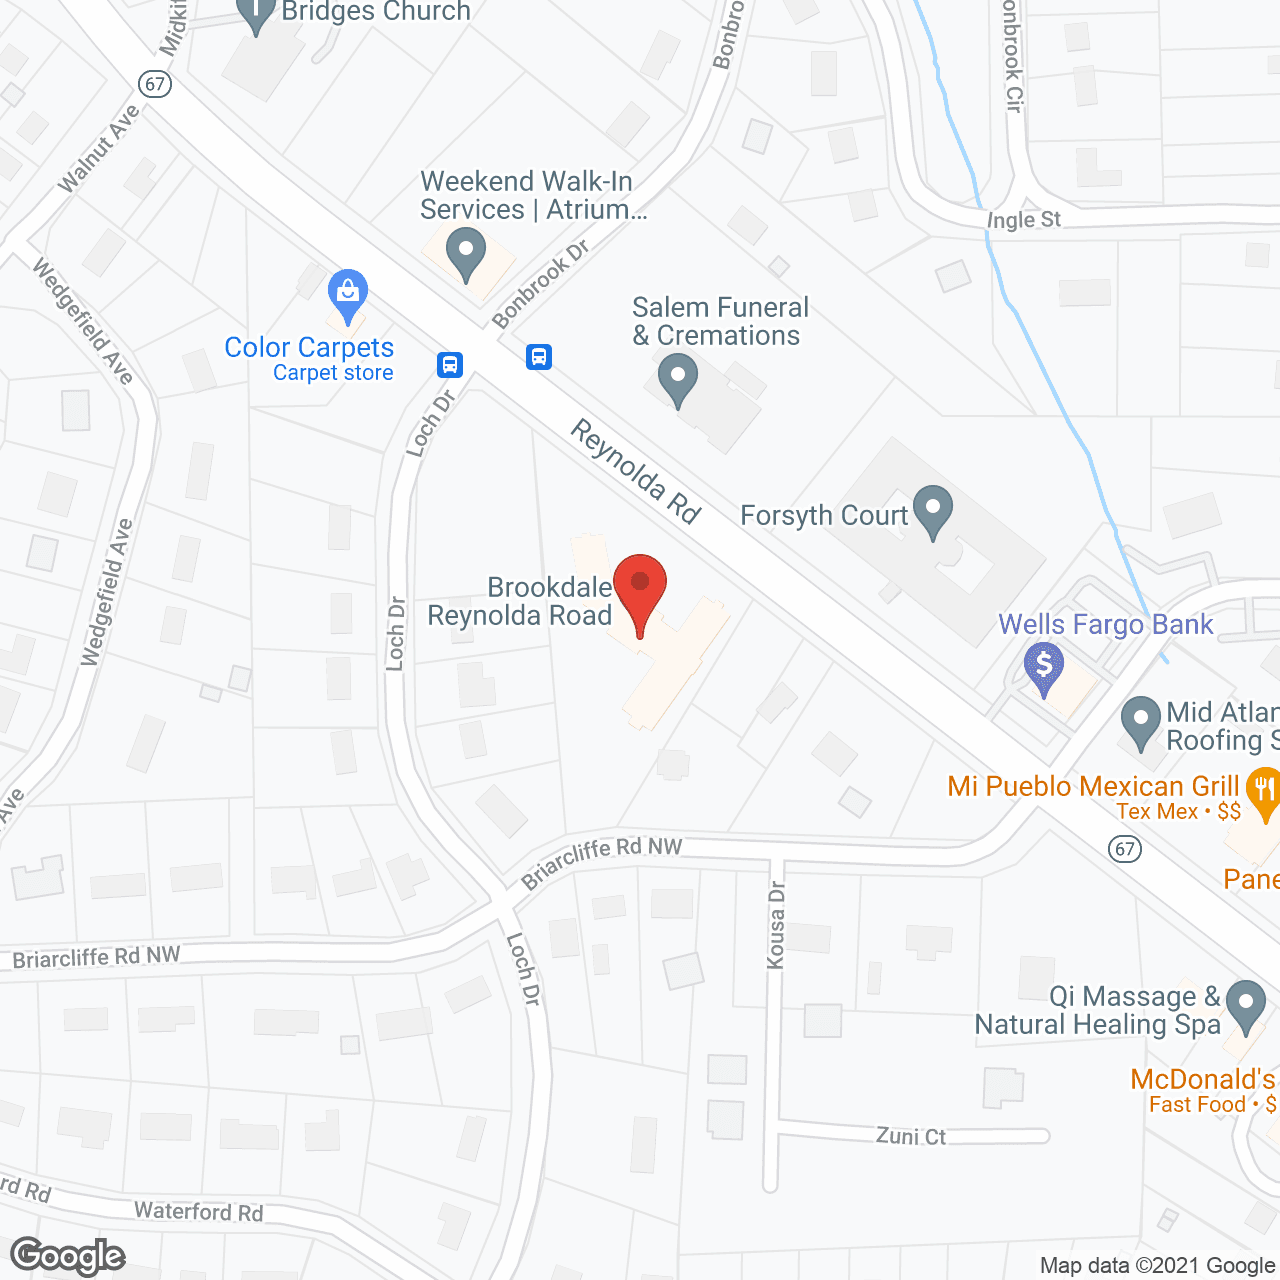 Brookdale Reynolda Road in google map